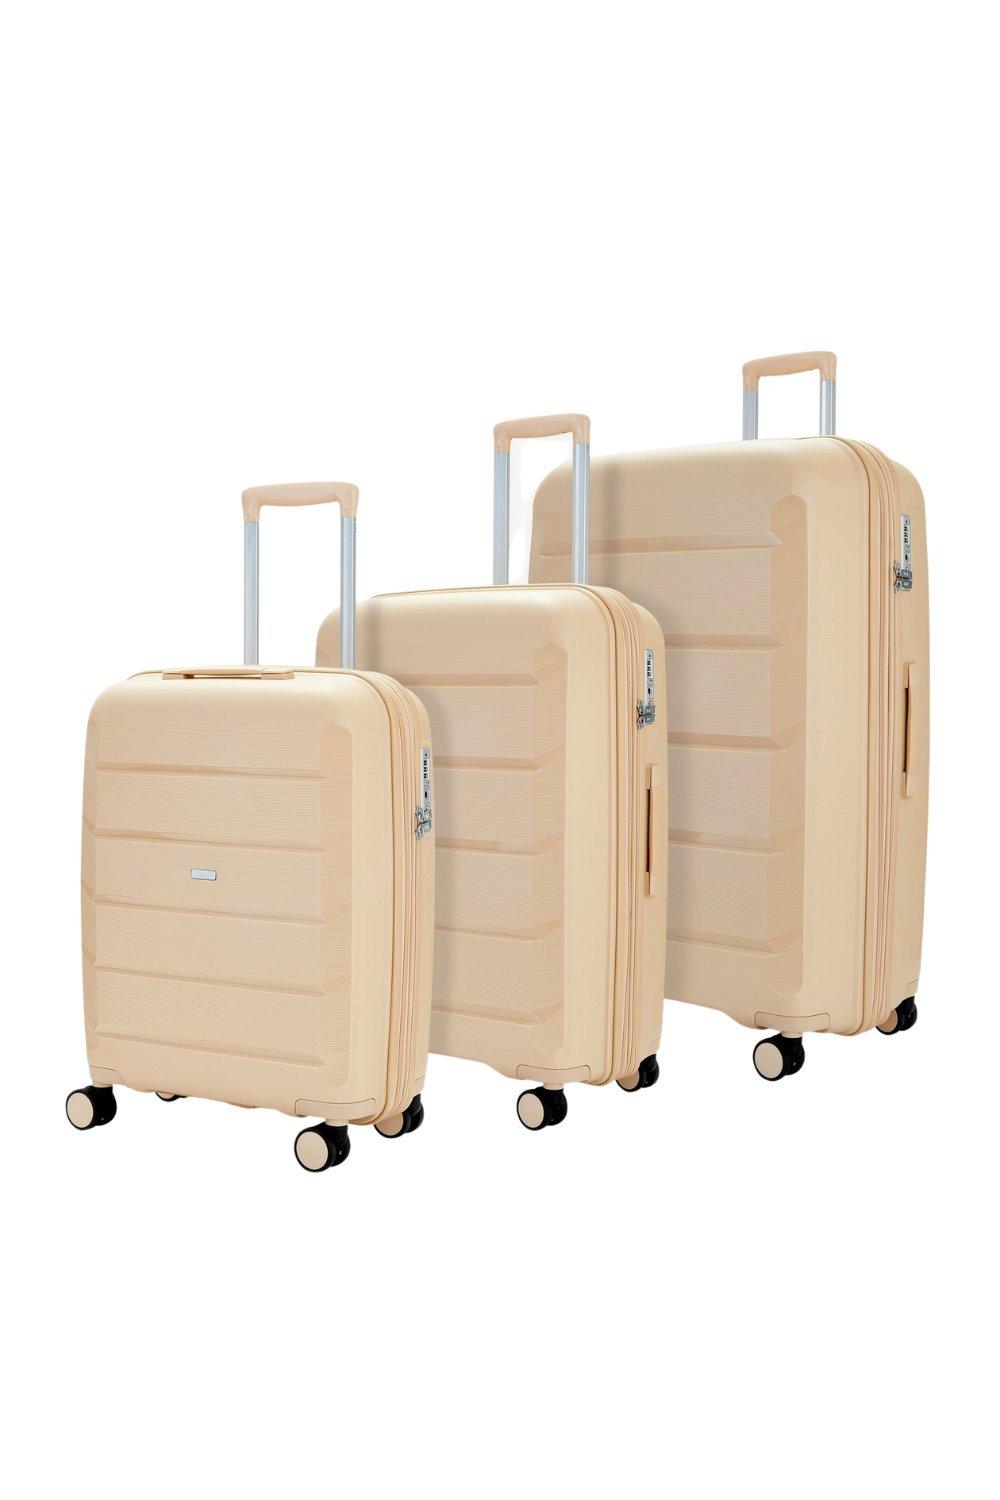 Luggage Tulum Pc Set Wheel Hardshell Expandable Suitcases Rock